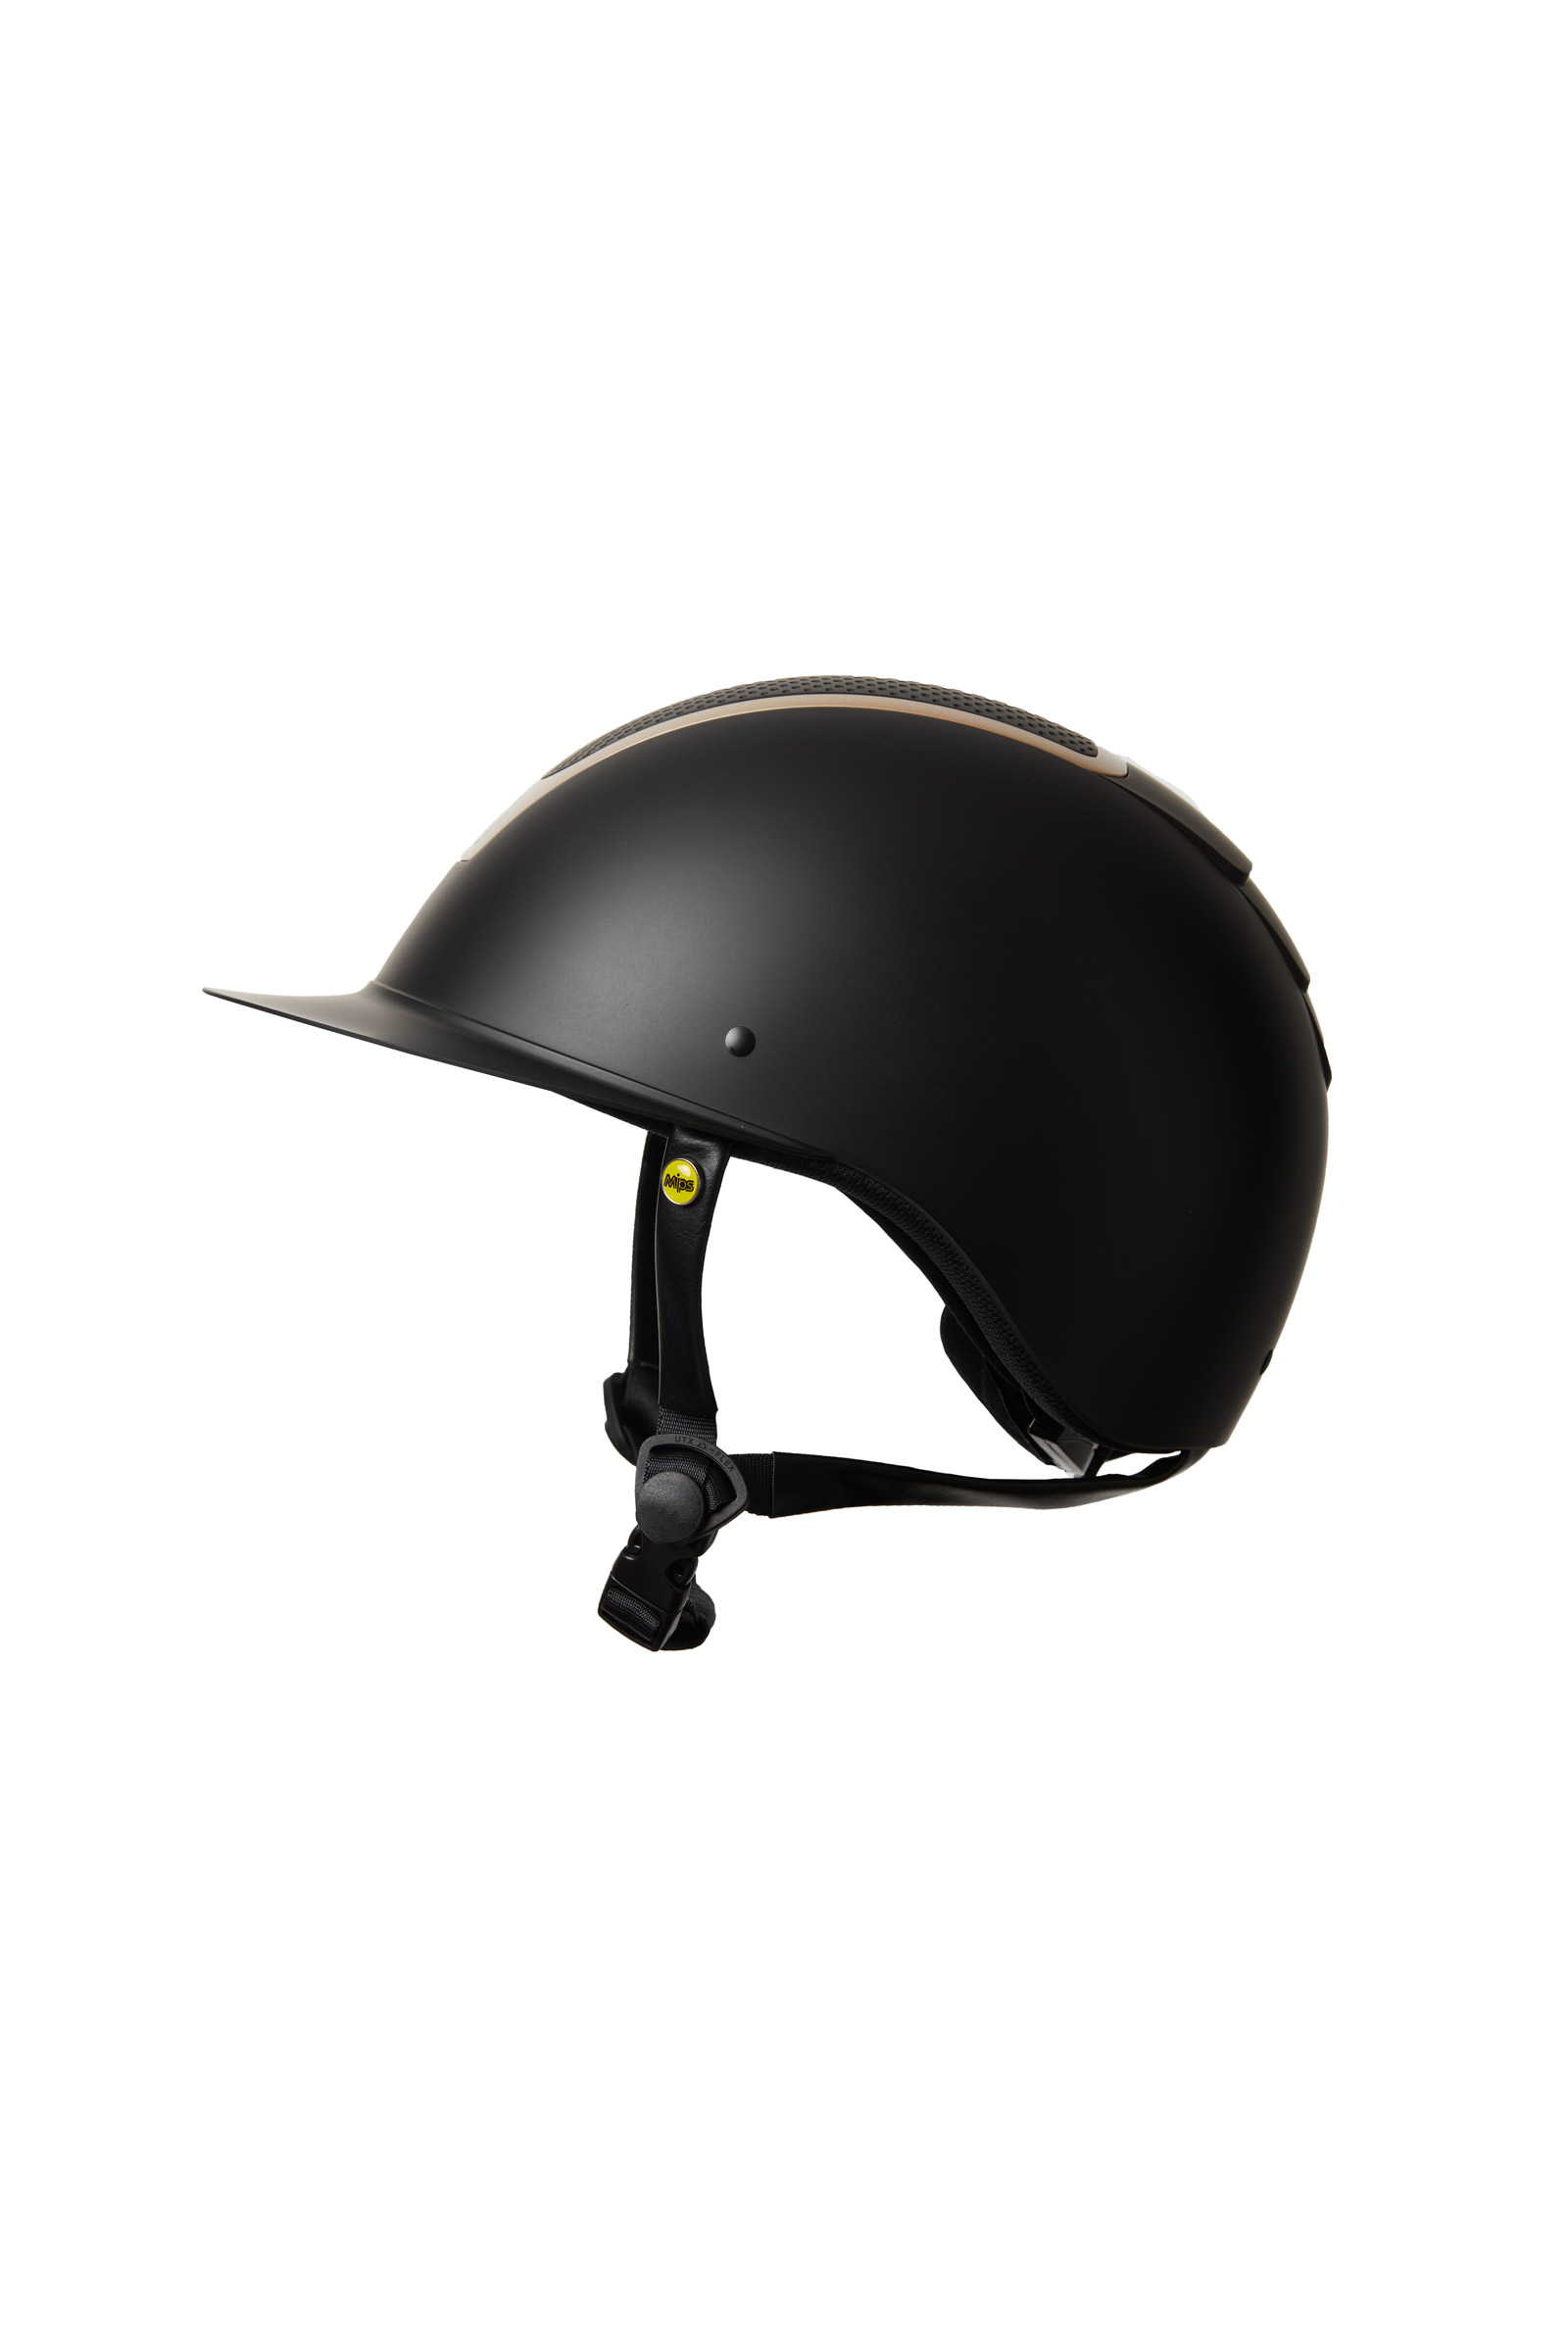 Acheter X5 casque d'équitation BT casque BT 1000M interphone d